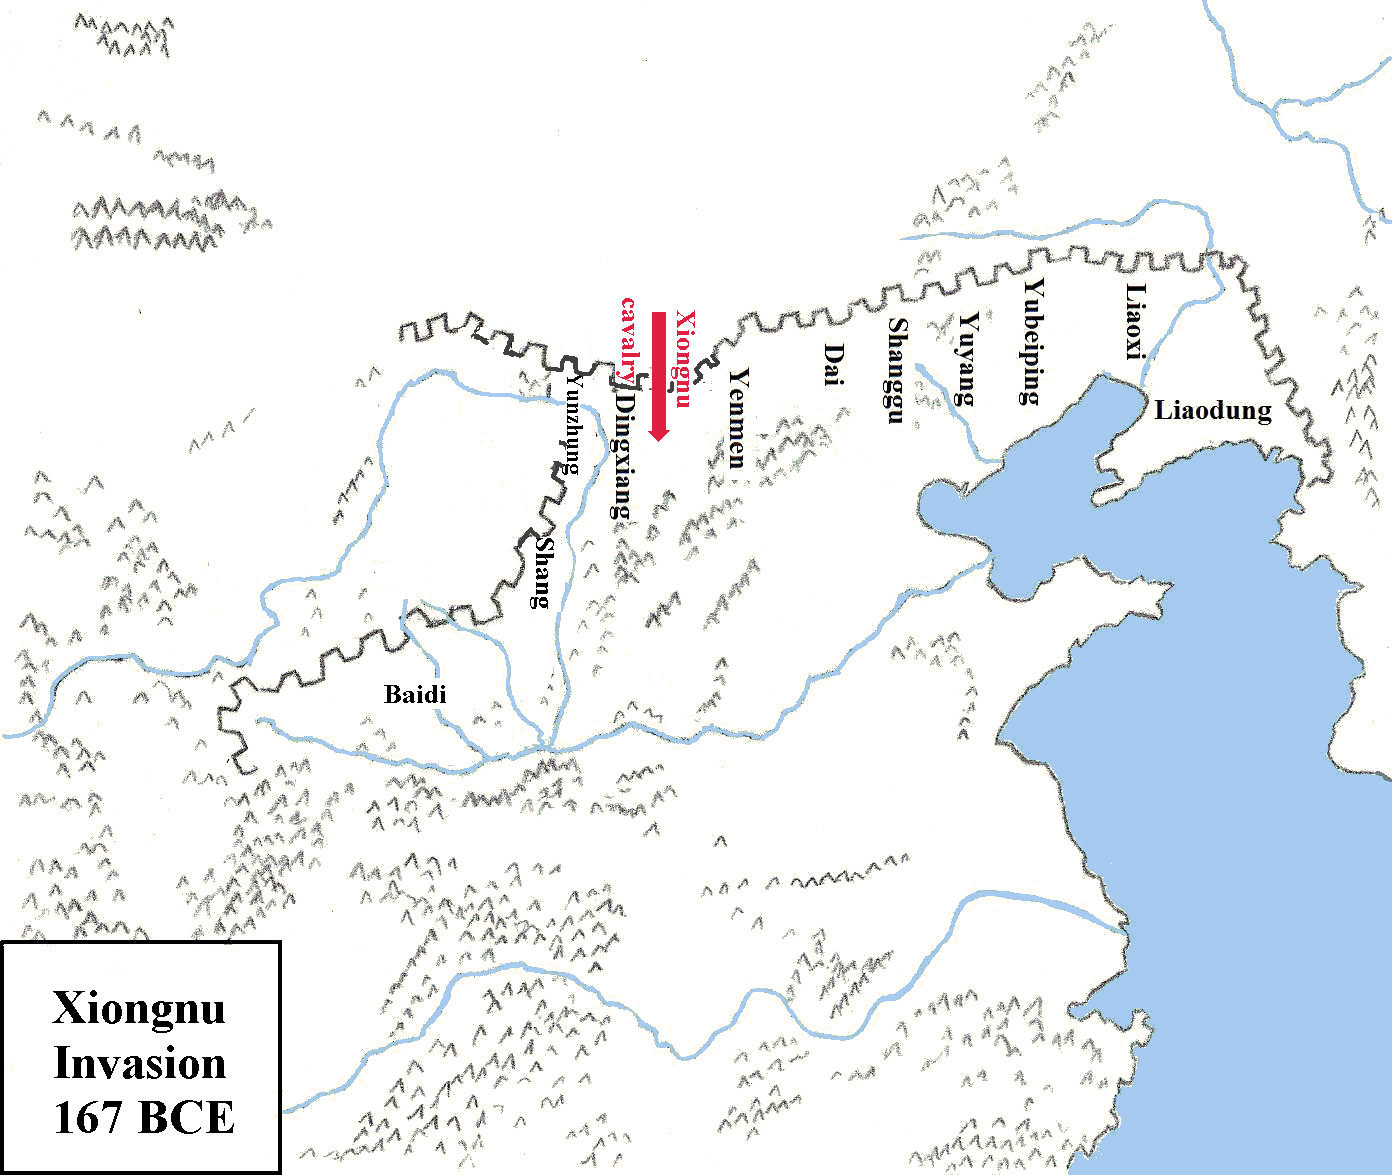 Xiongnu invasions in 167 BCE